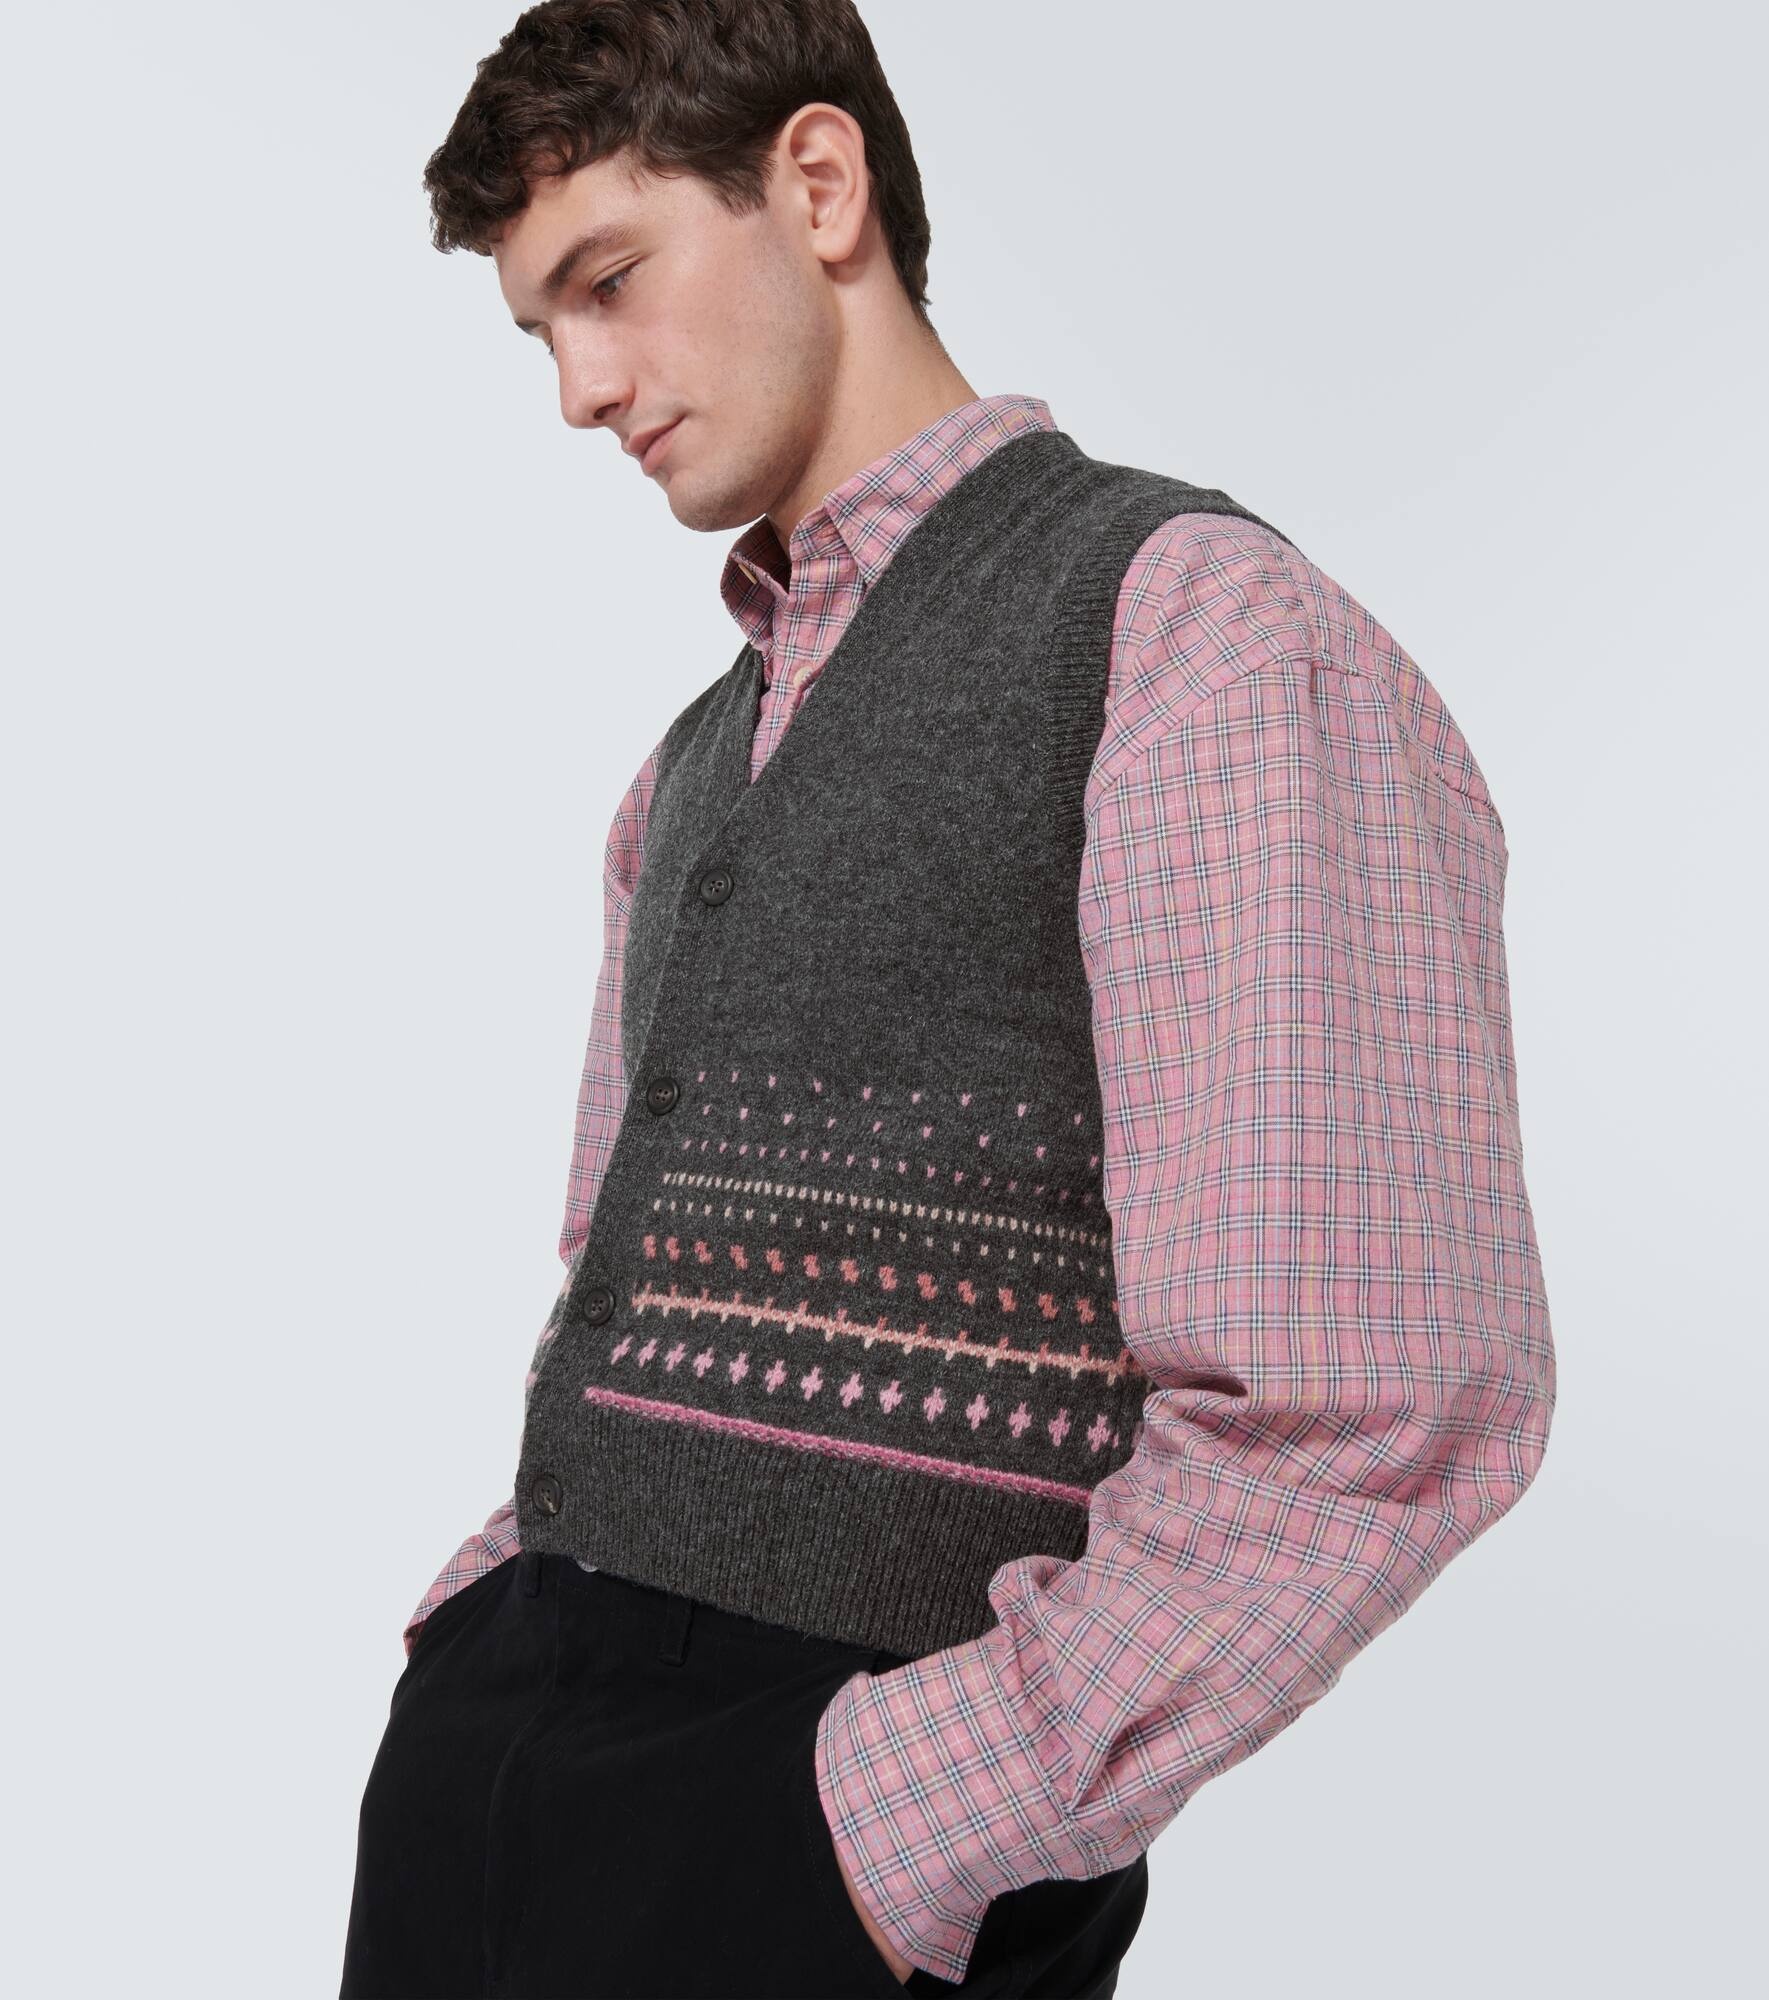 Wool sweater vest - 5